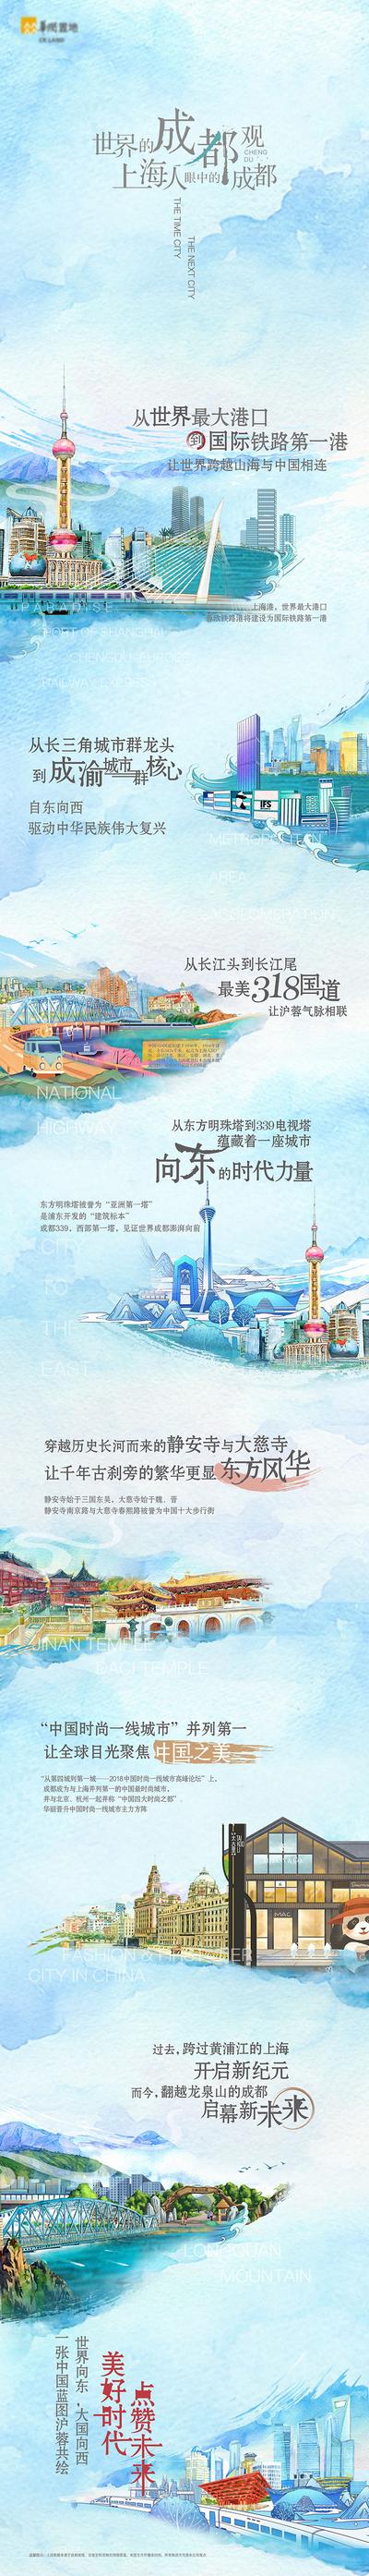 南门网 广告 海报 地产 地标 文创 插画 北京 上海 长图 推文